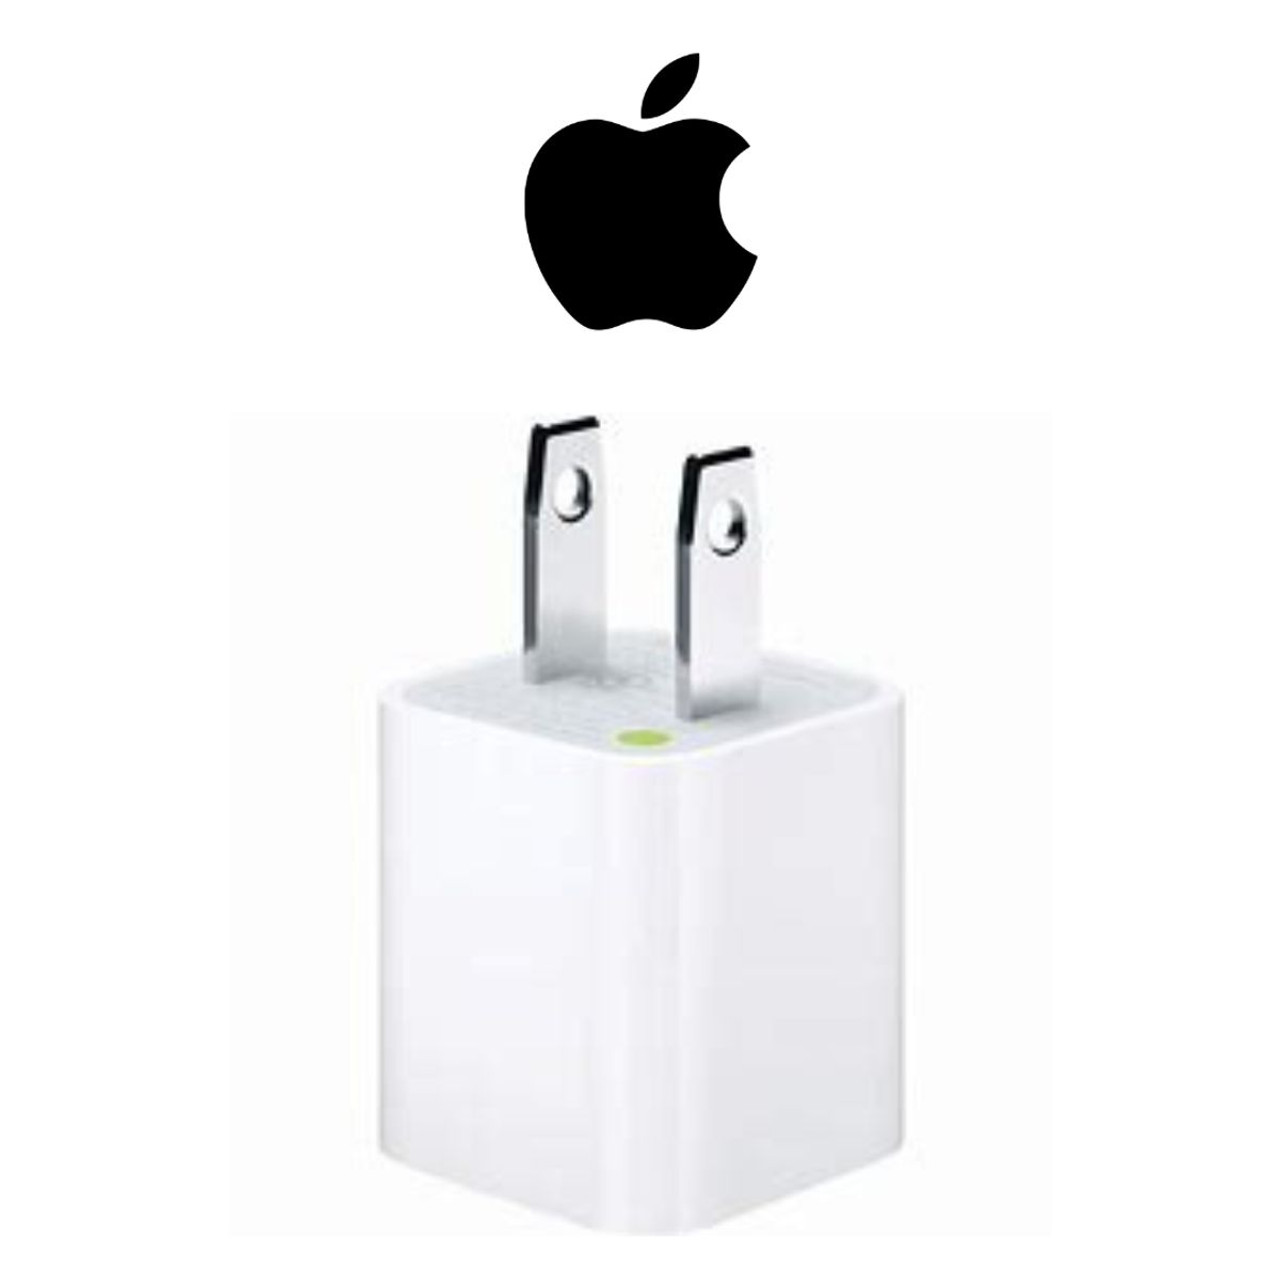 Apple USB Power Adapter, White